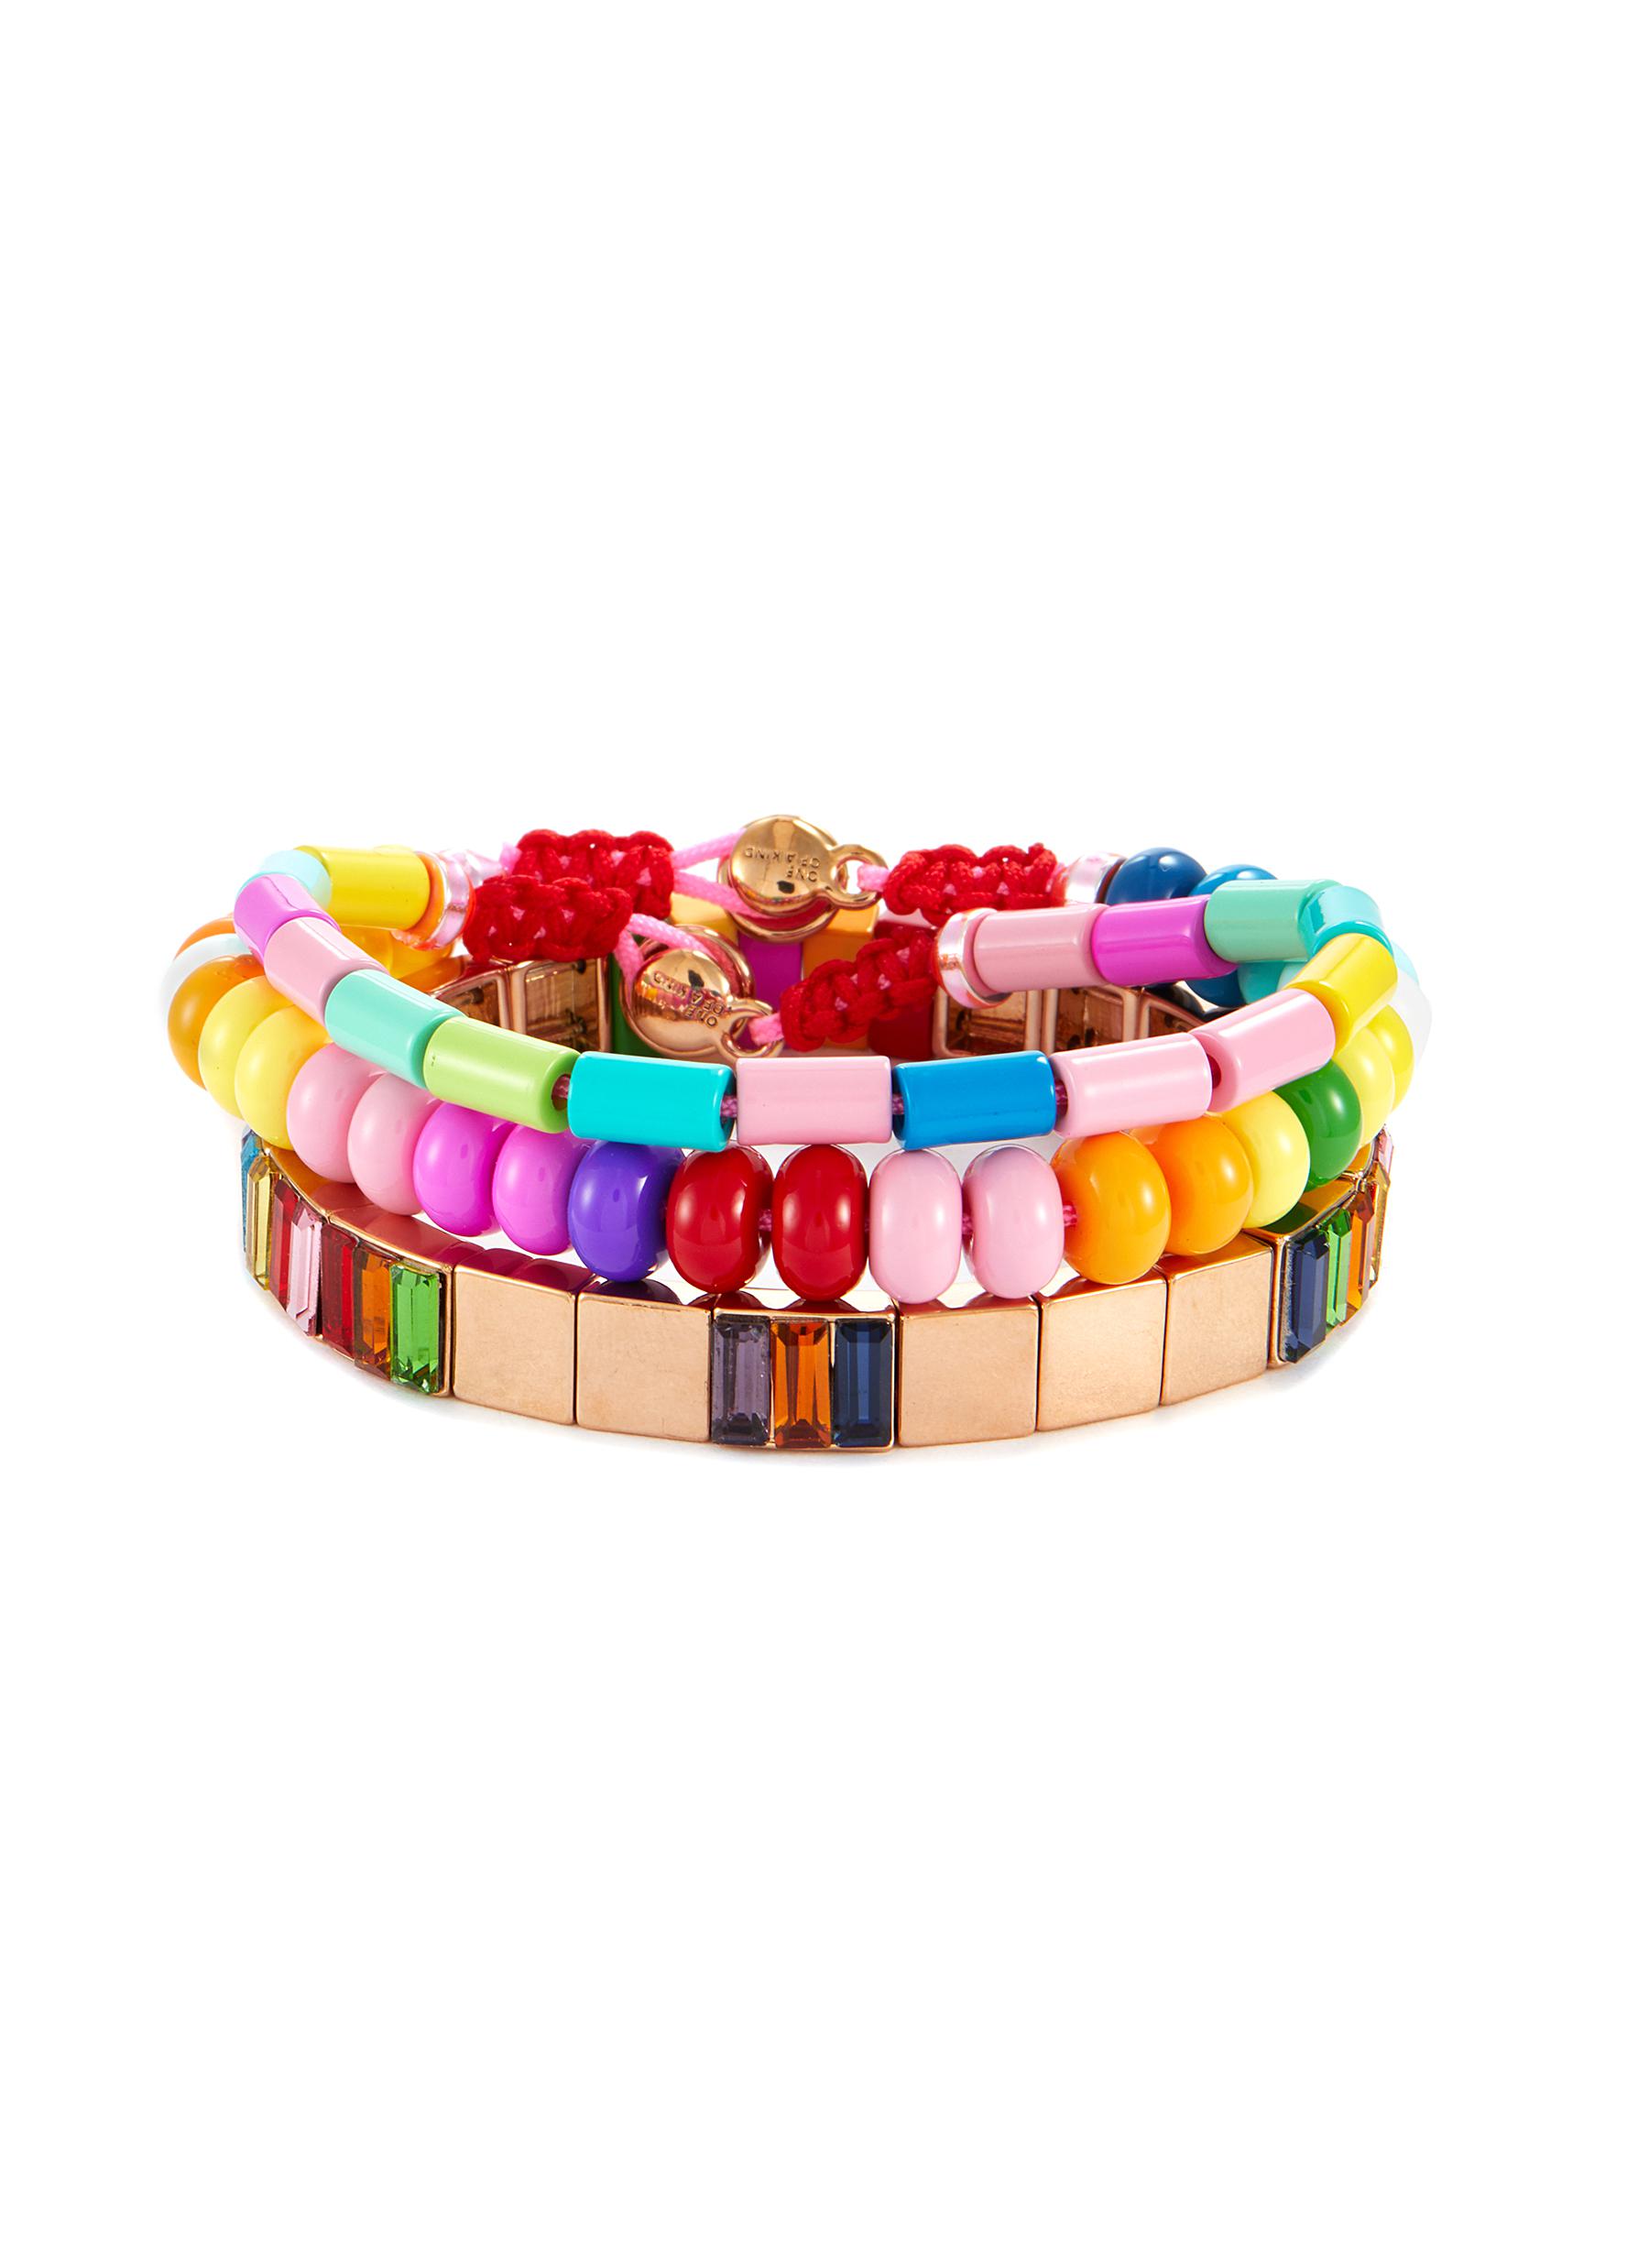 3 Vibrant Fall Colorful Bracelets